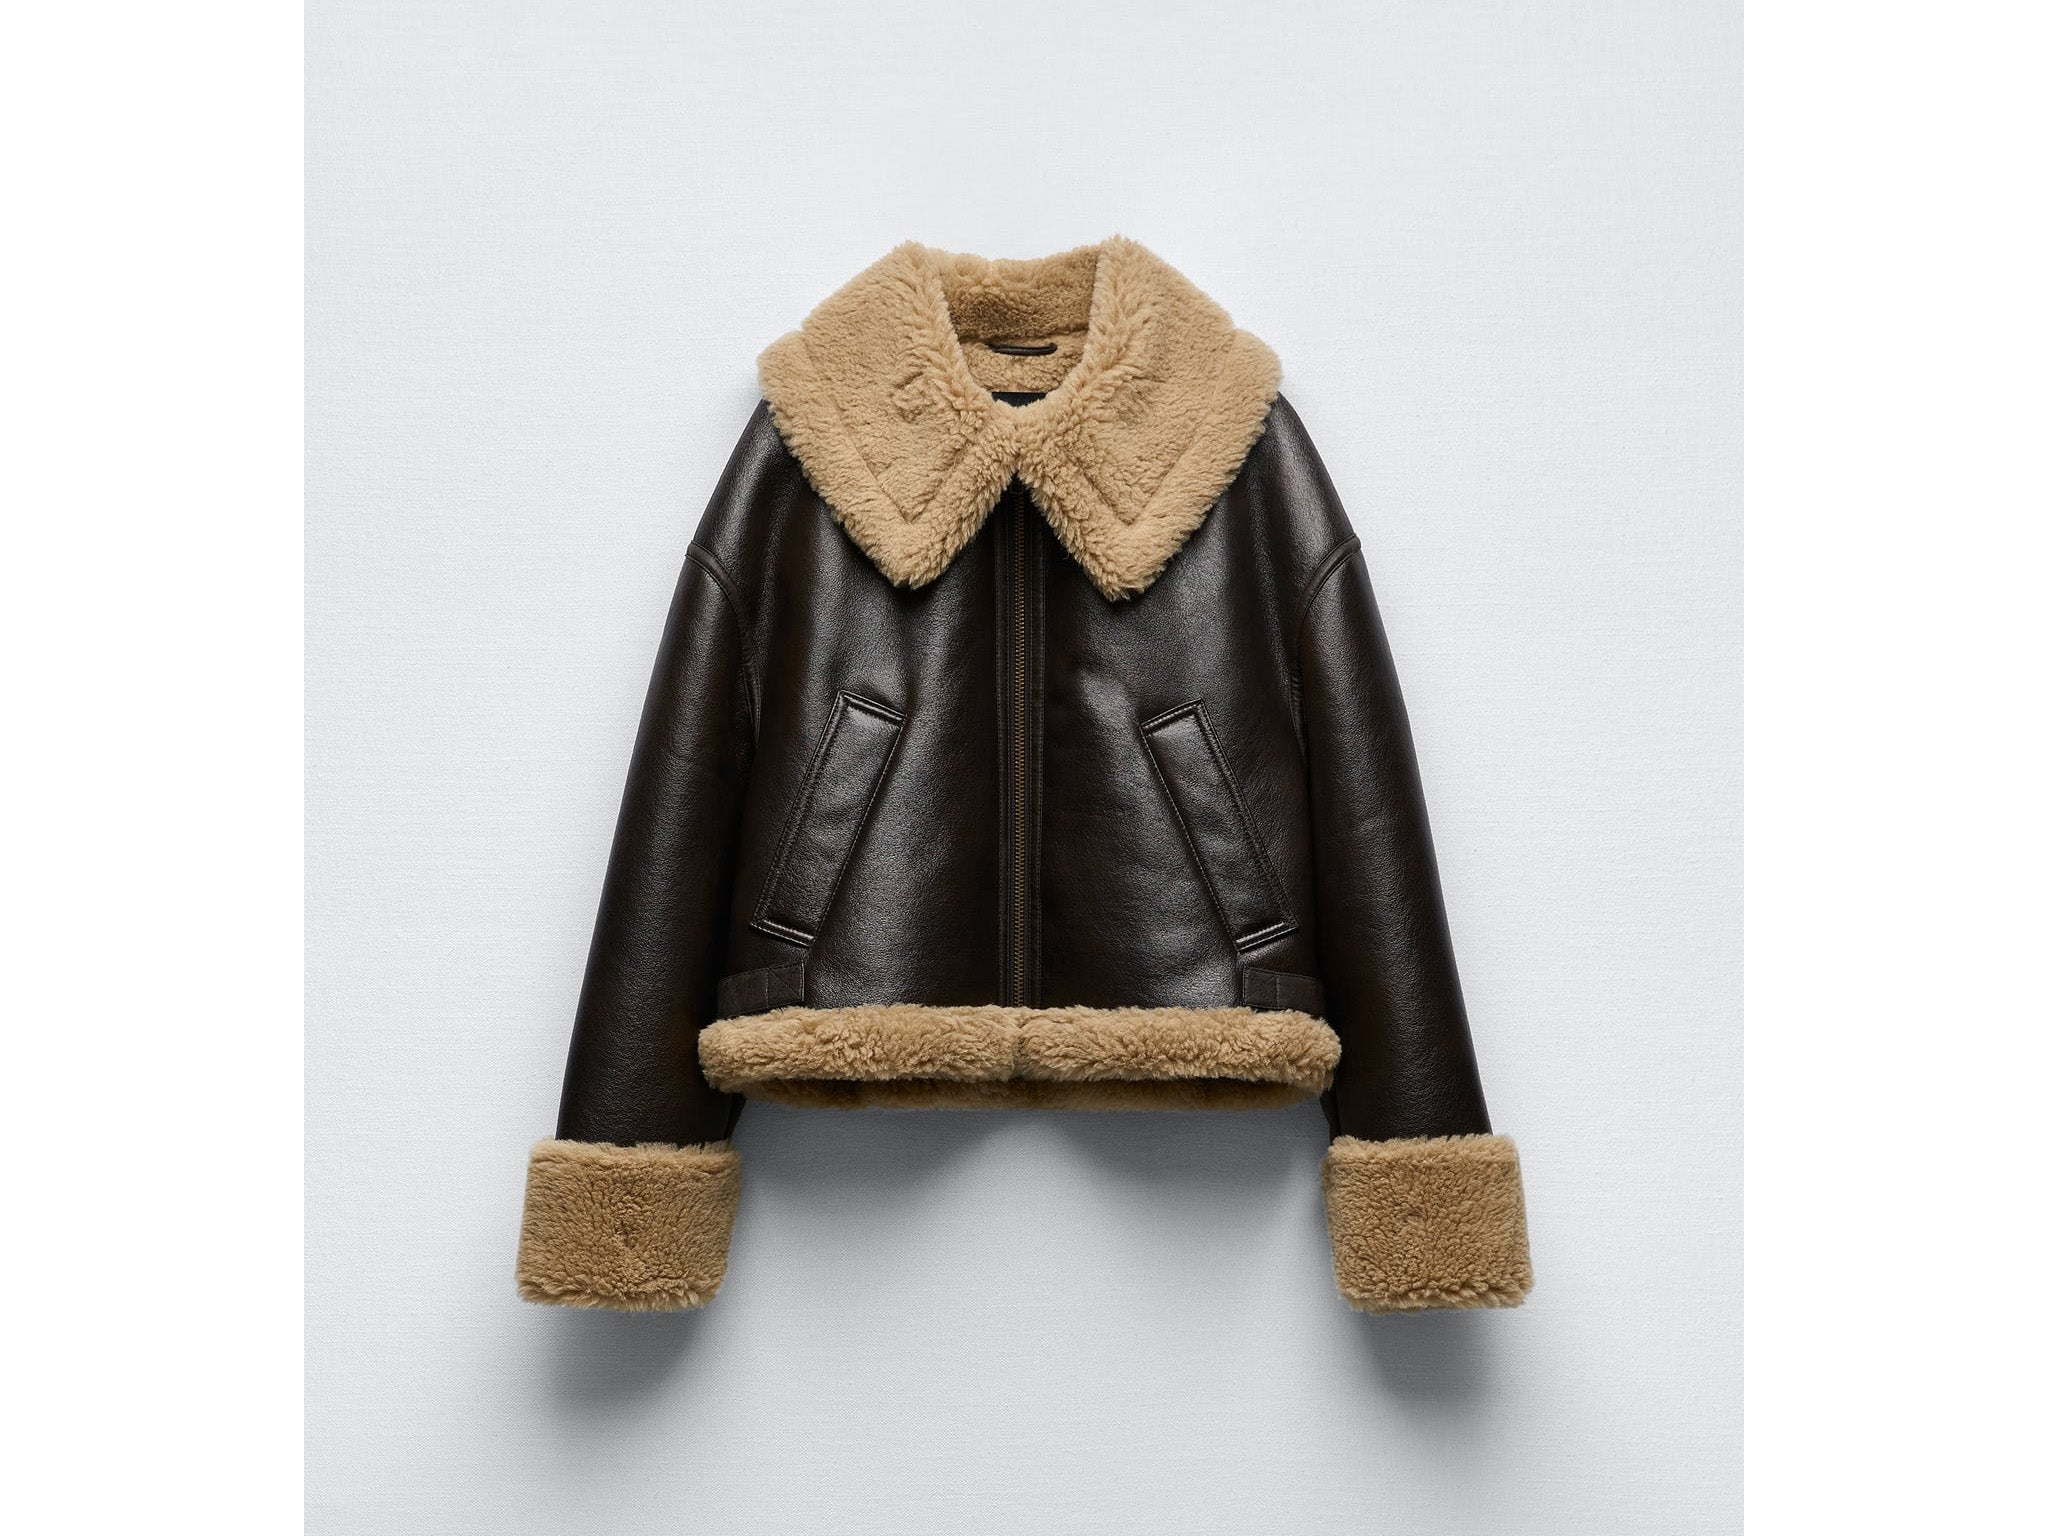 Zara's TikTok-viral shearling aviator jacket is back in stock